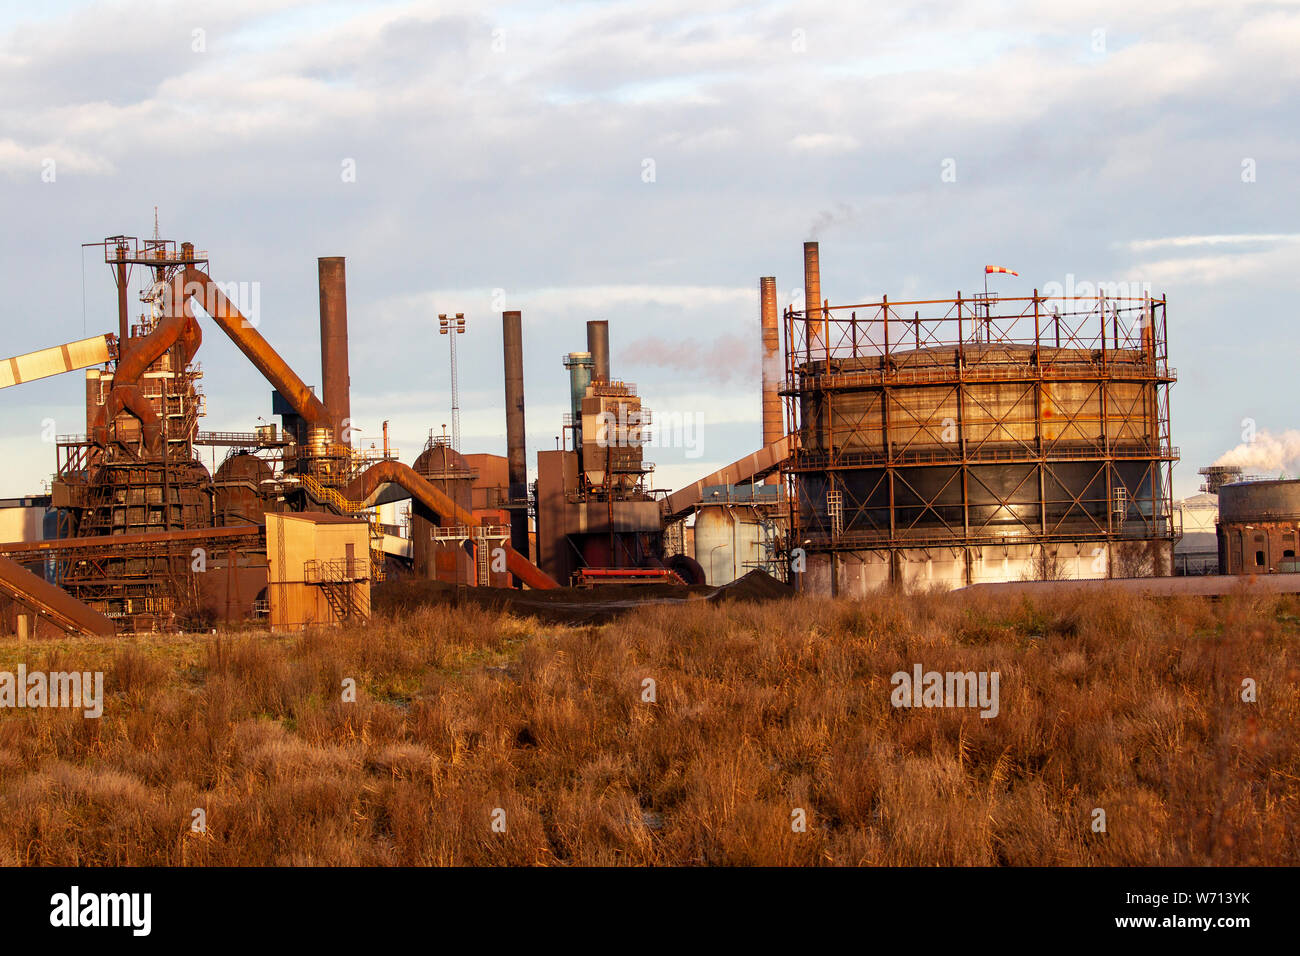 Fotos de una planta siderúrgica sucio con chimeneas humeantes Foto de stock